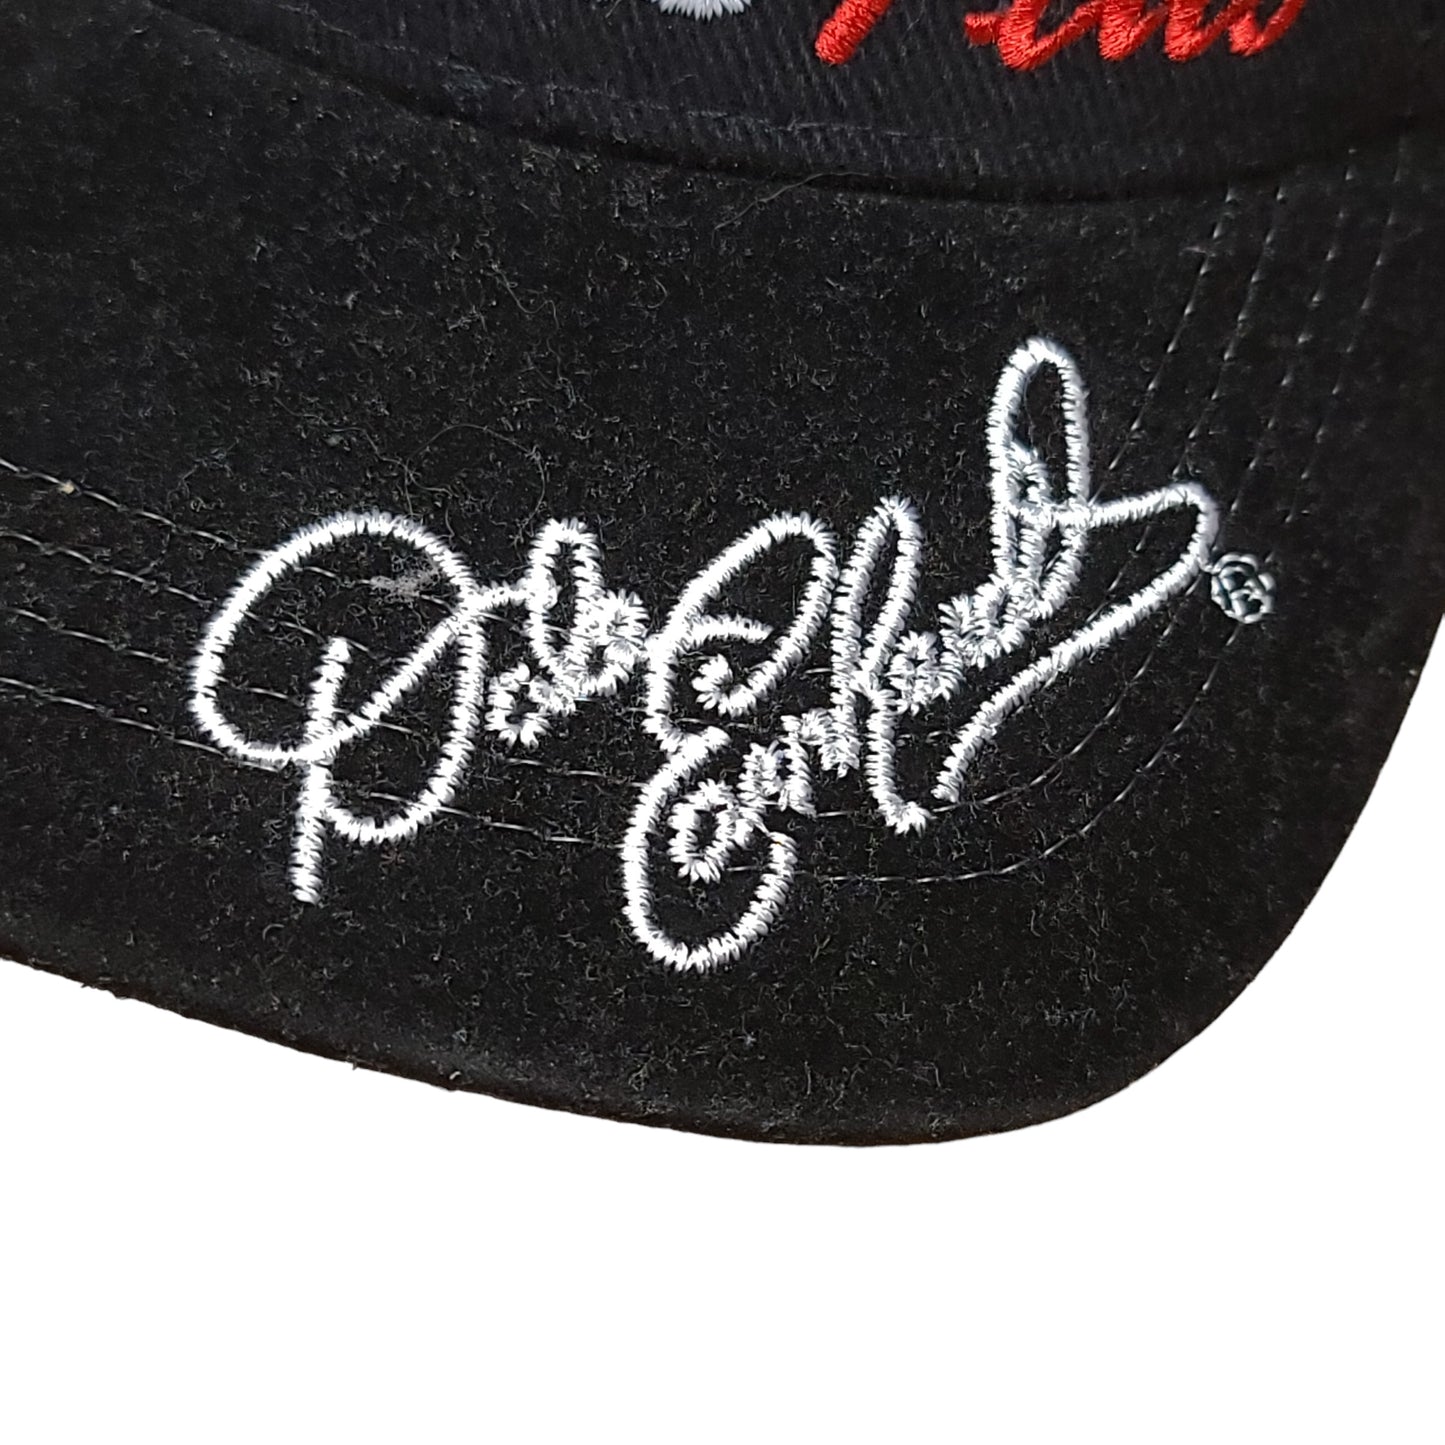 Vintage Dale Earnhardt Nascar Racing Black Strap Back Hat